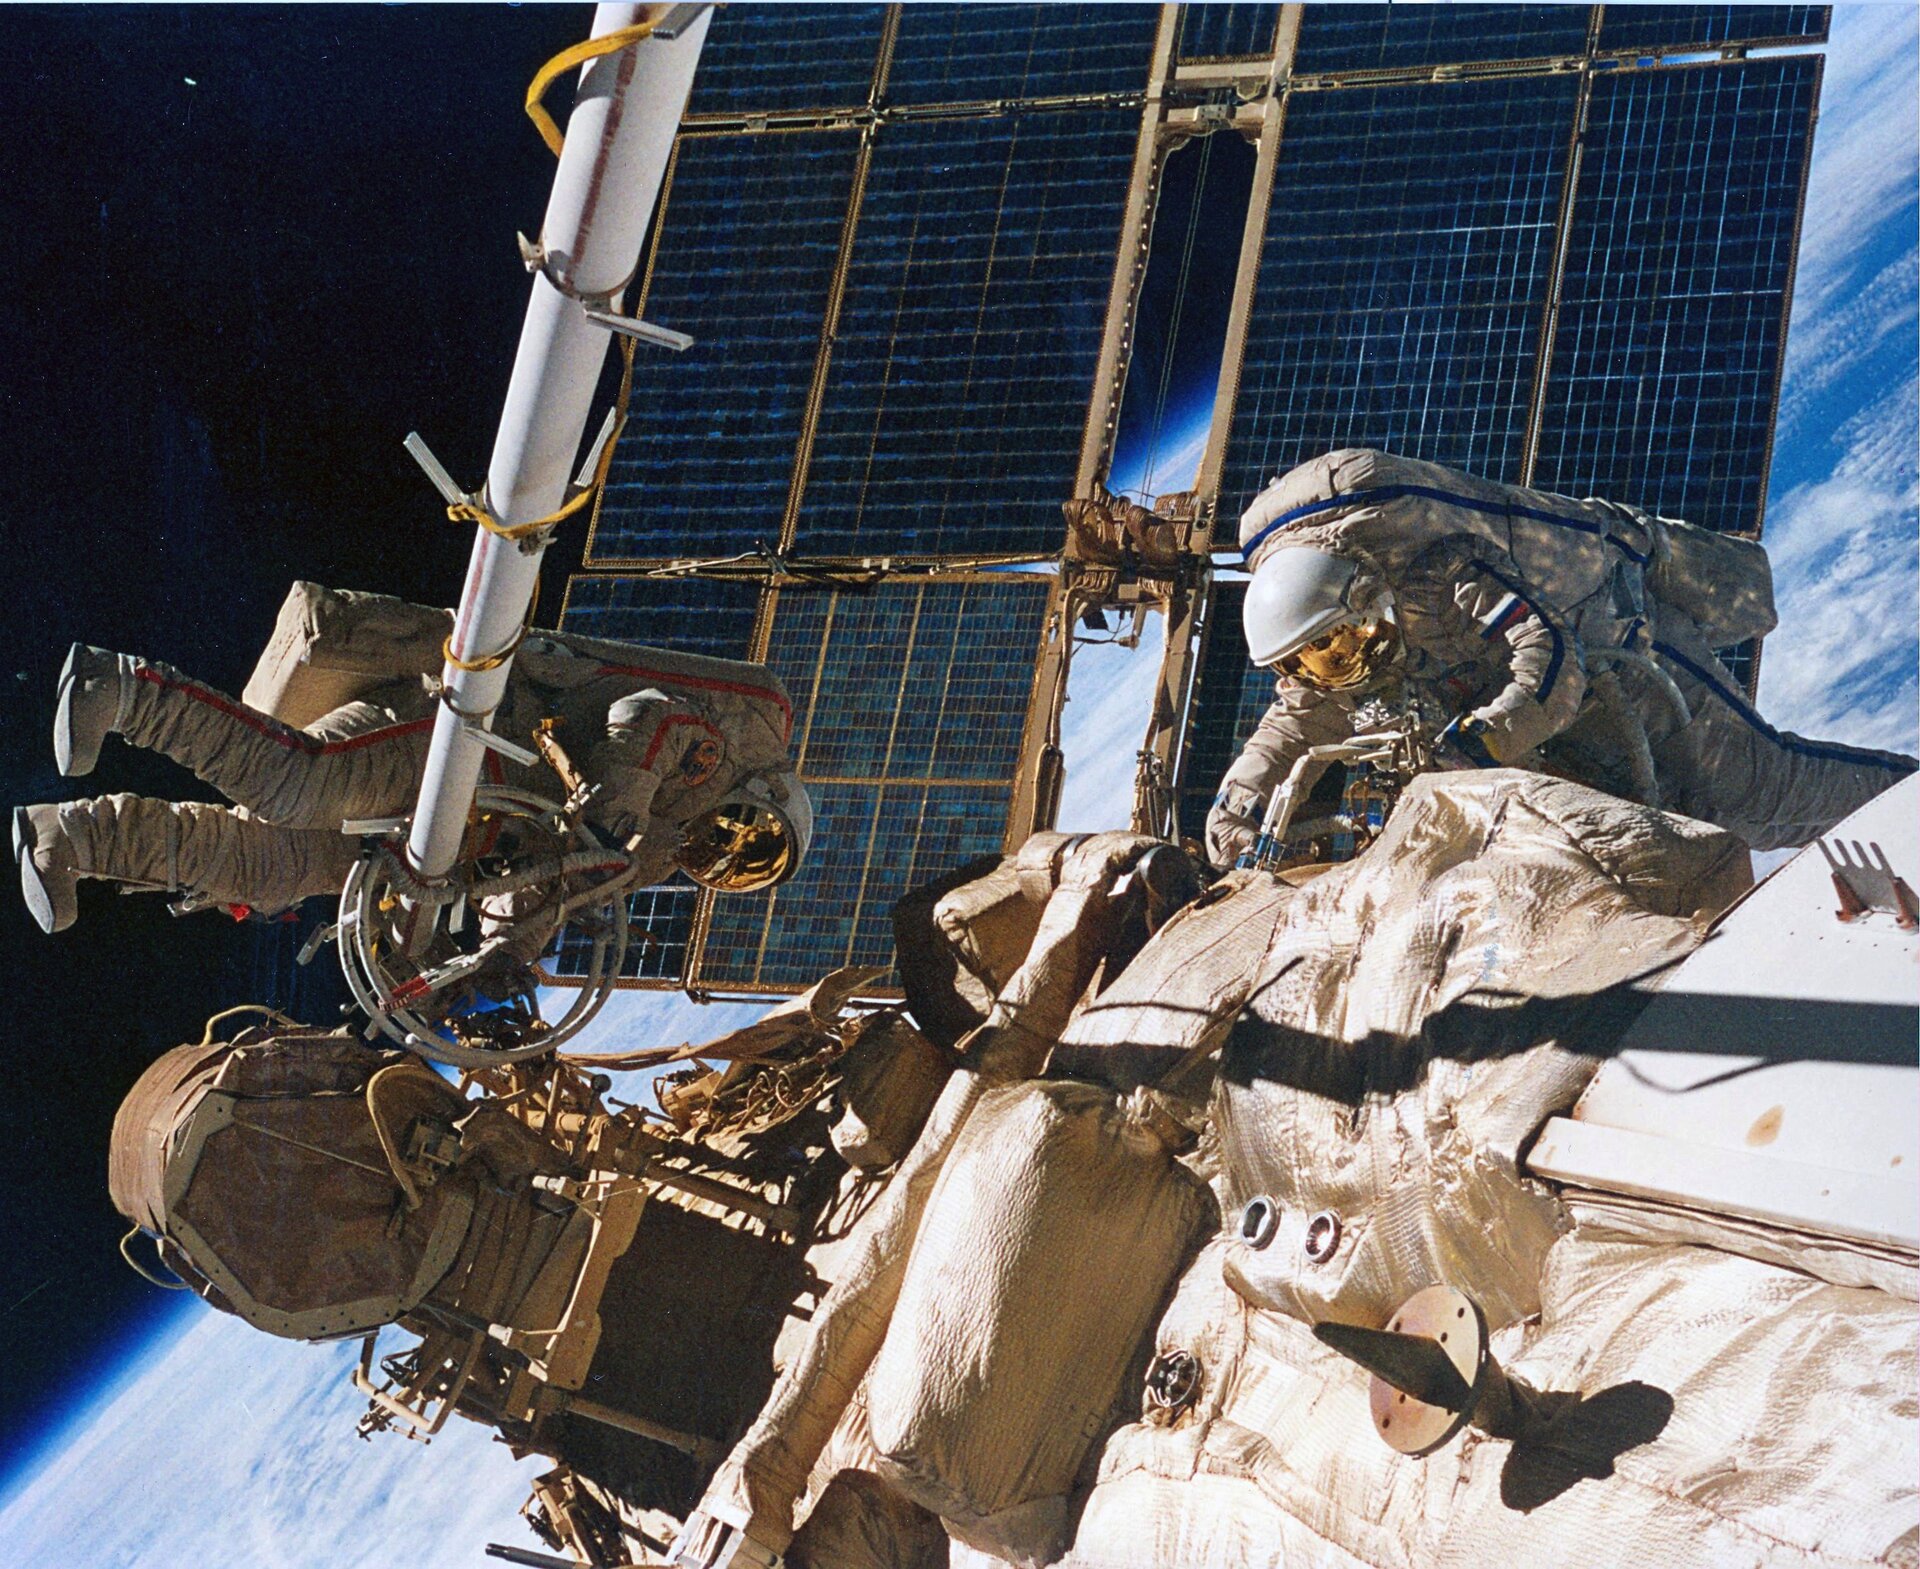 Reiter and Gidzenko spacewalk